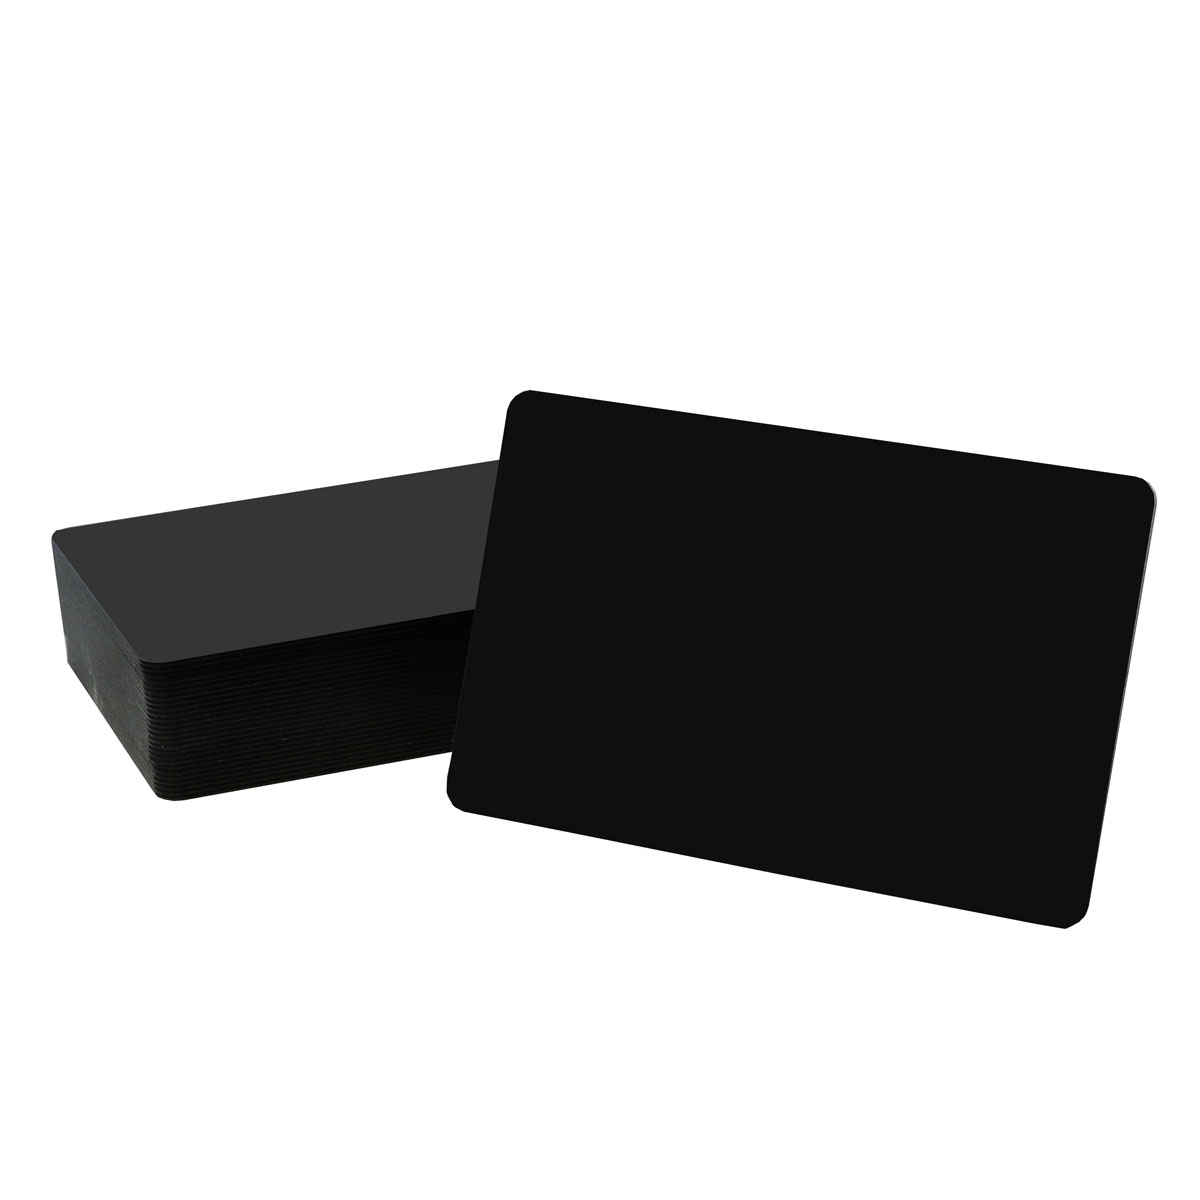 Preisschildkarten schwarz, matt/glänzend, 0.5mm